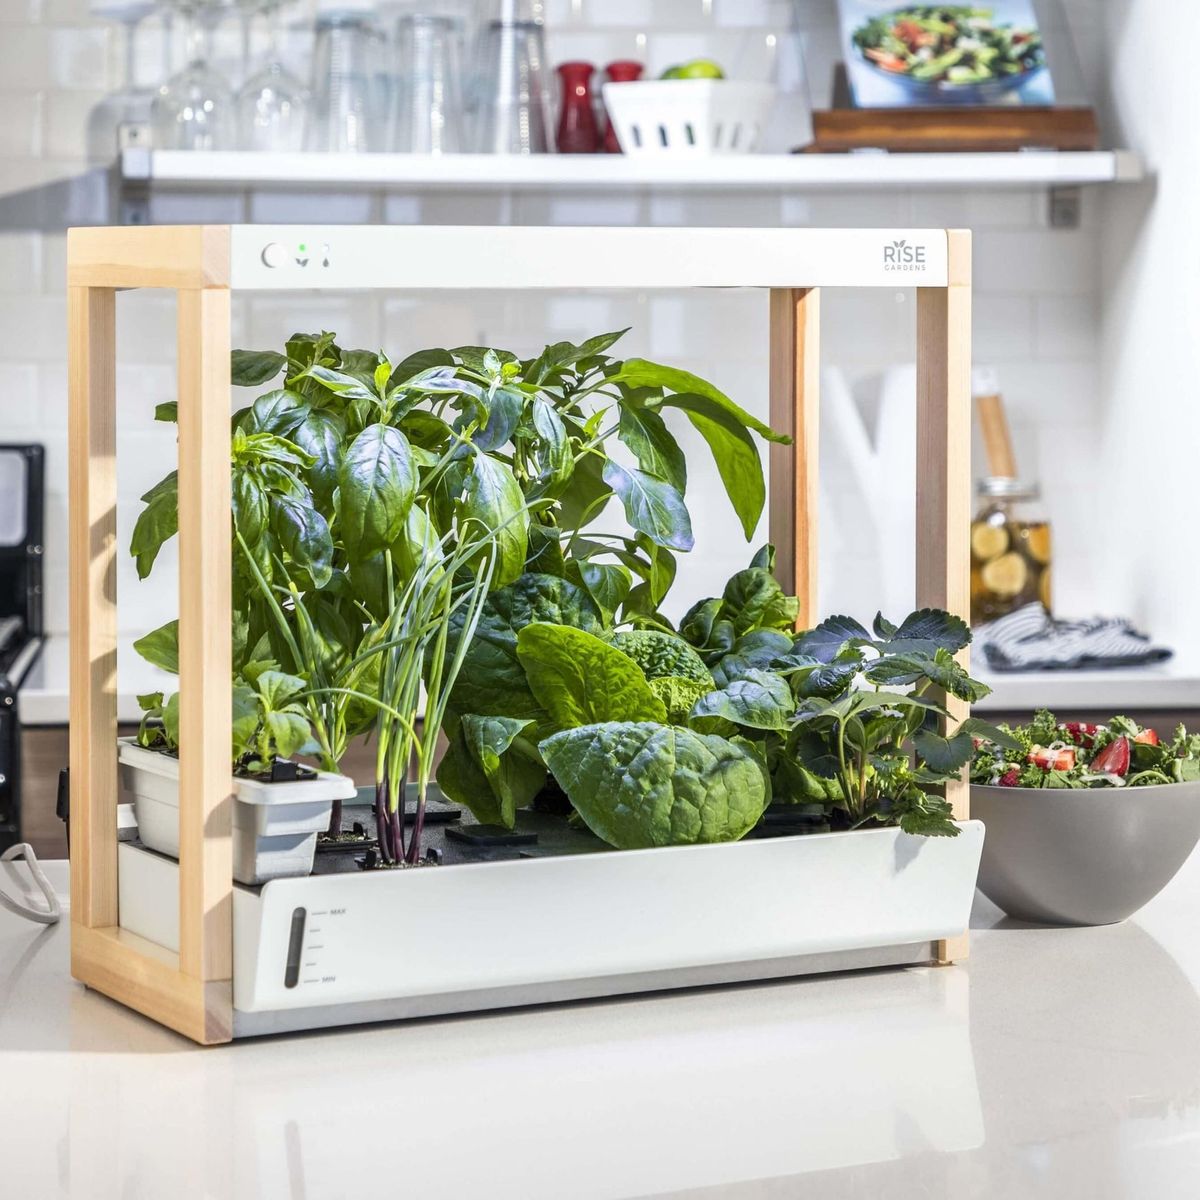 Herb Garden Starter Kit Smart Garden Planter LED Grow Light For Home Kitchen 